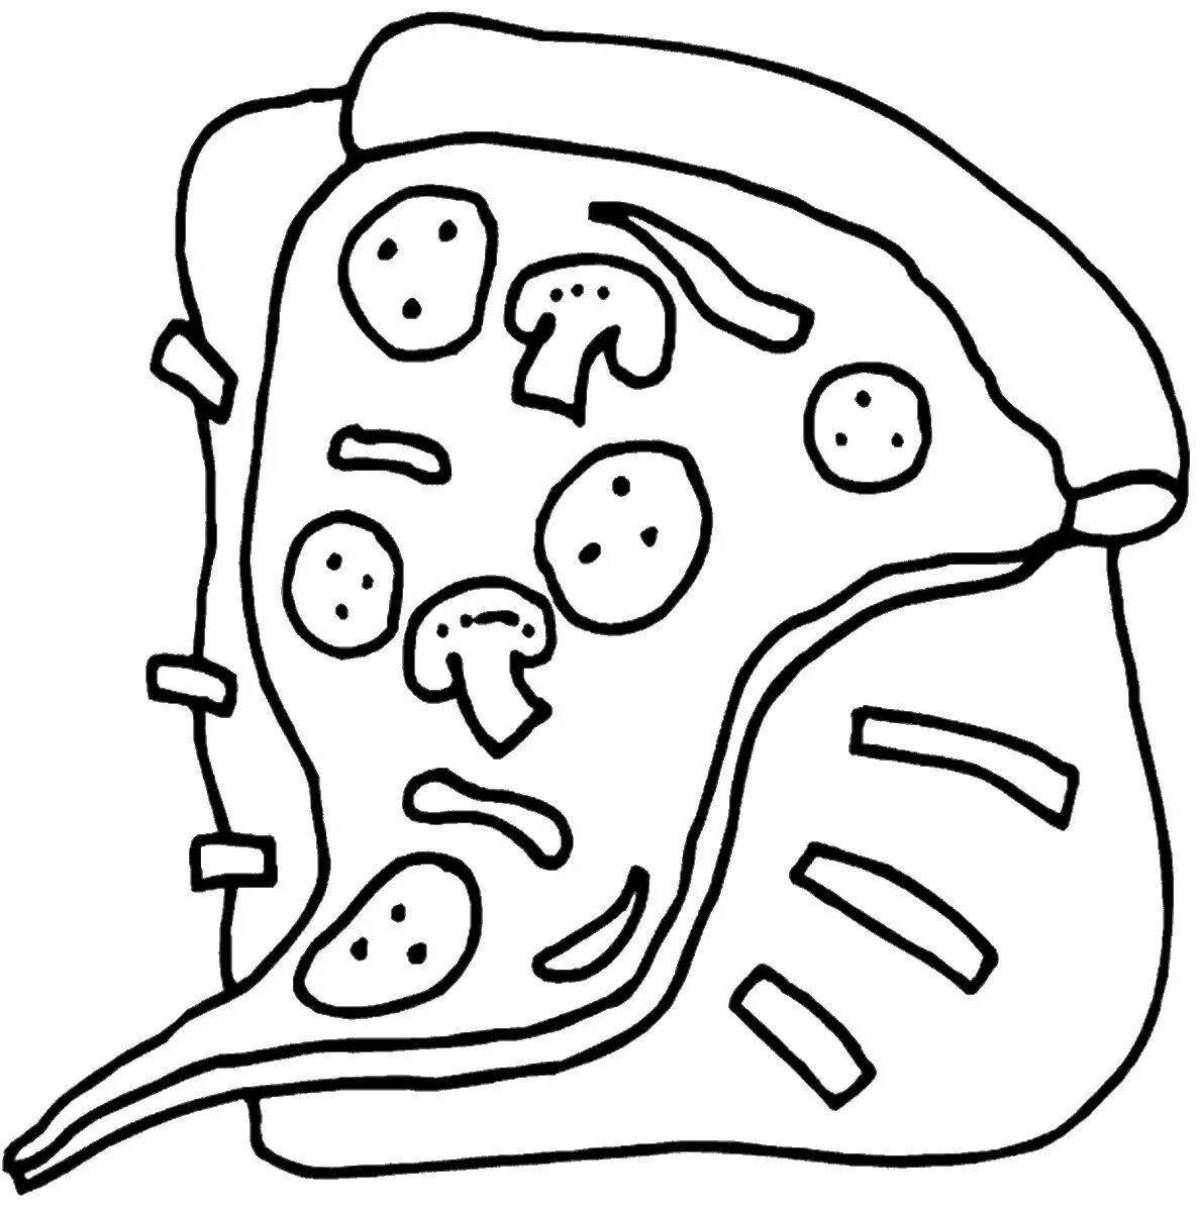 Food pizza #1